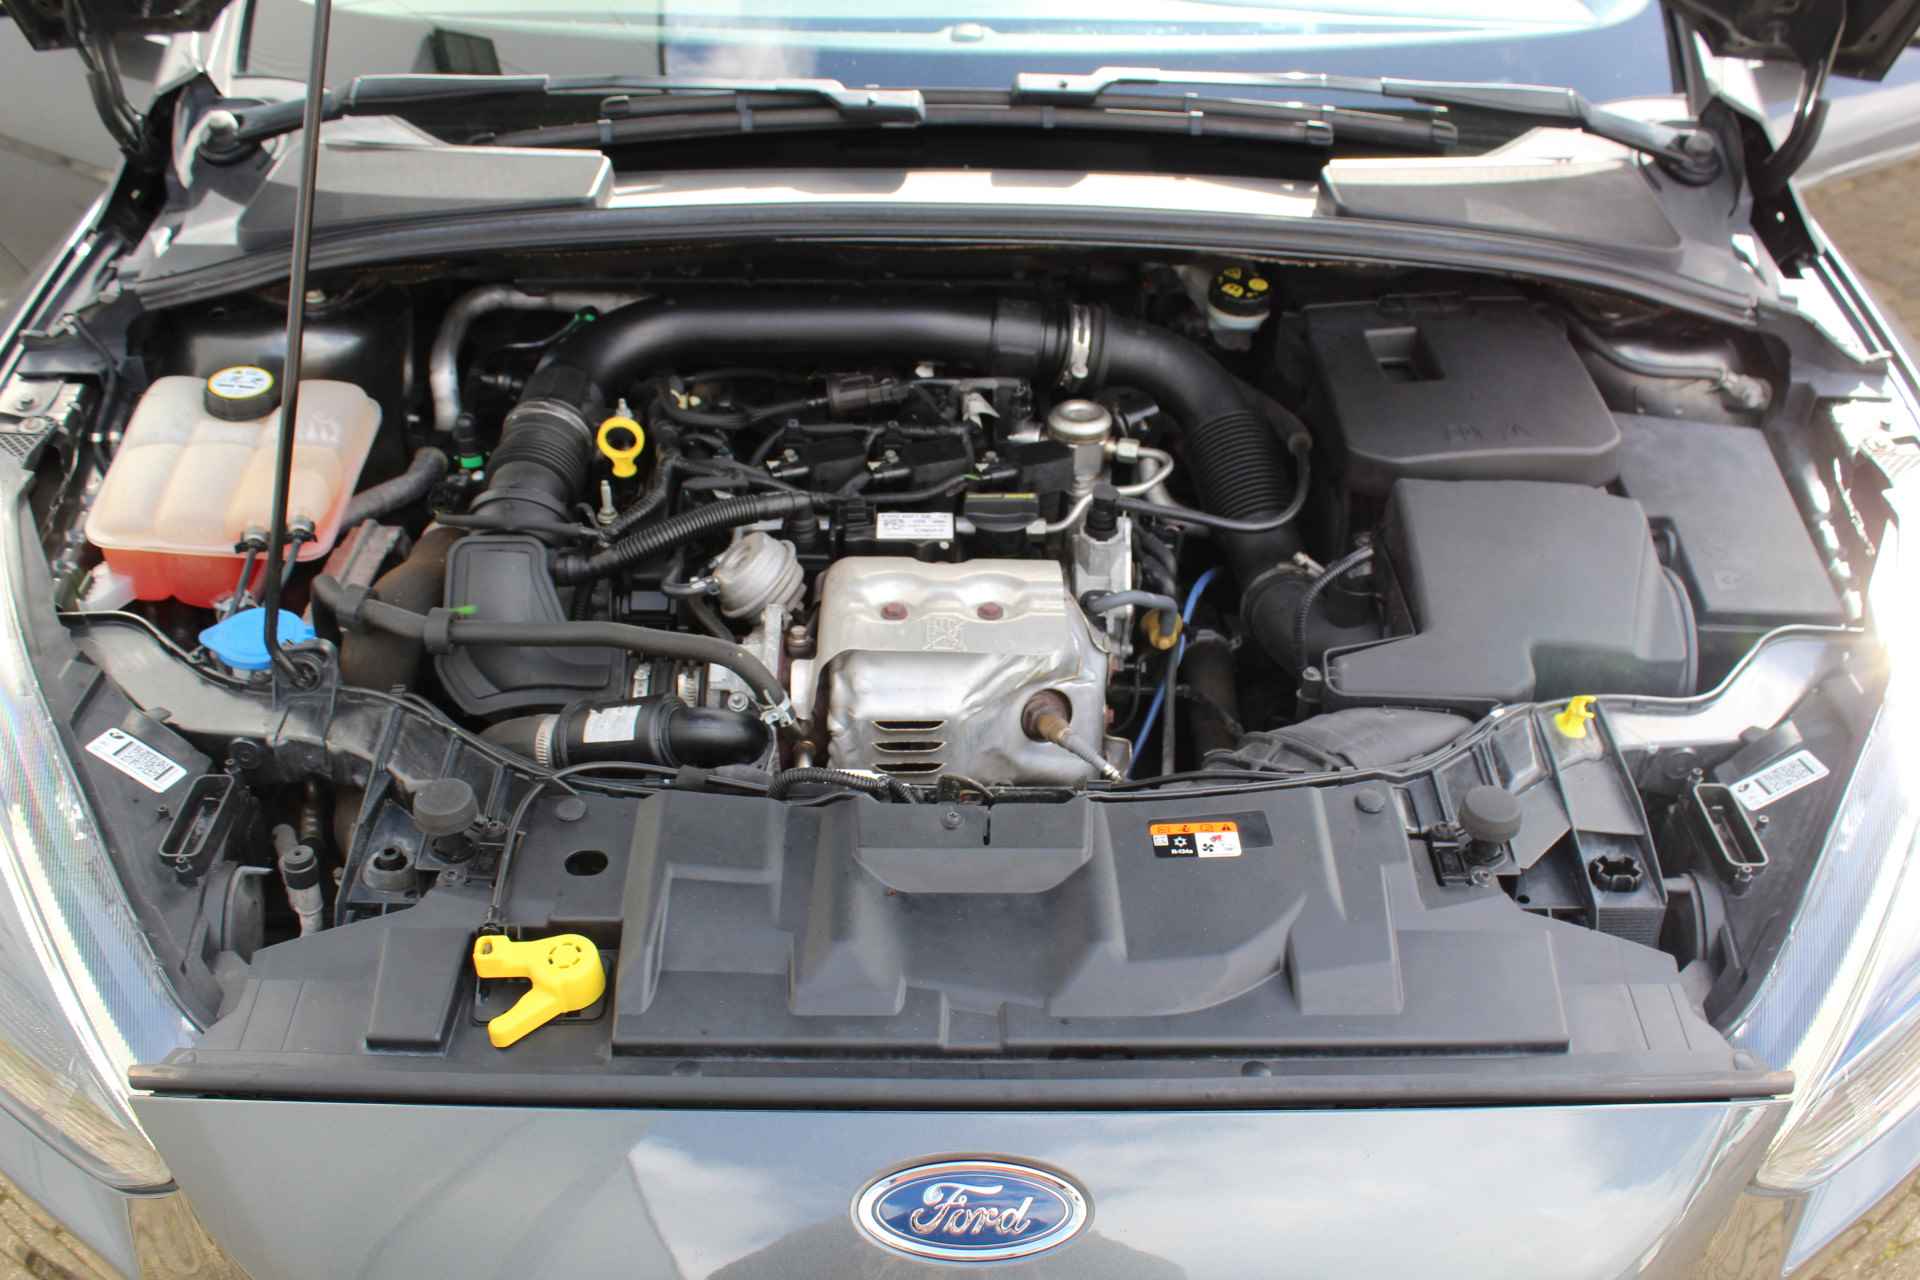 Ford Focus 1.0-125pk Titanium. Fijn rijdende en goed onderhouden Ford Focus hatchback. Volautm. airco dual, cruise control, multifunctioneel stuurwiel, boordcomputer, navigatie, telefoonvoorb., metallic lak, LM wielen, elektr. ramen en spiegels etc. - 5/38